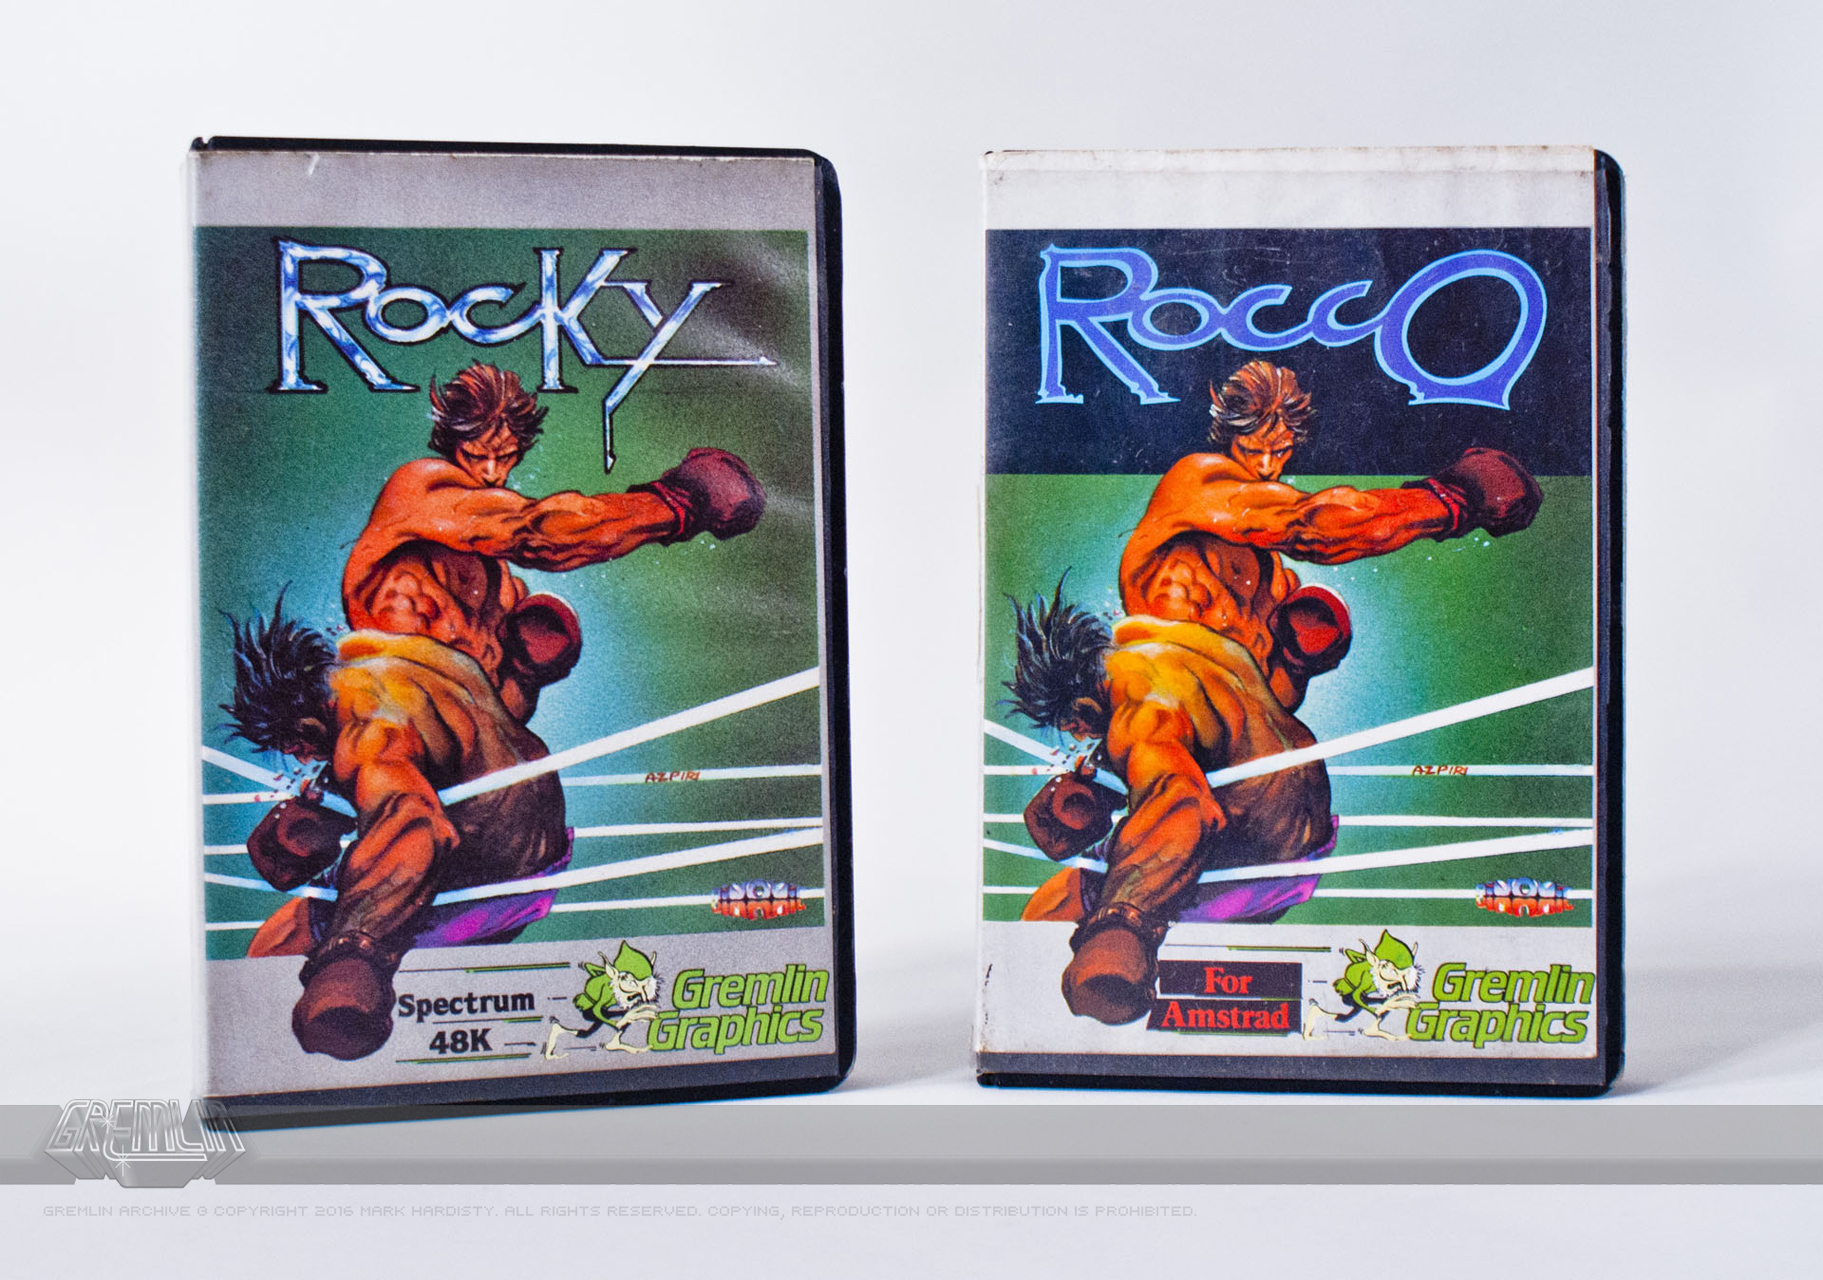 Rocky / Rocco